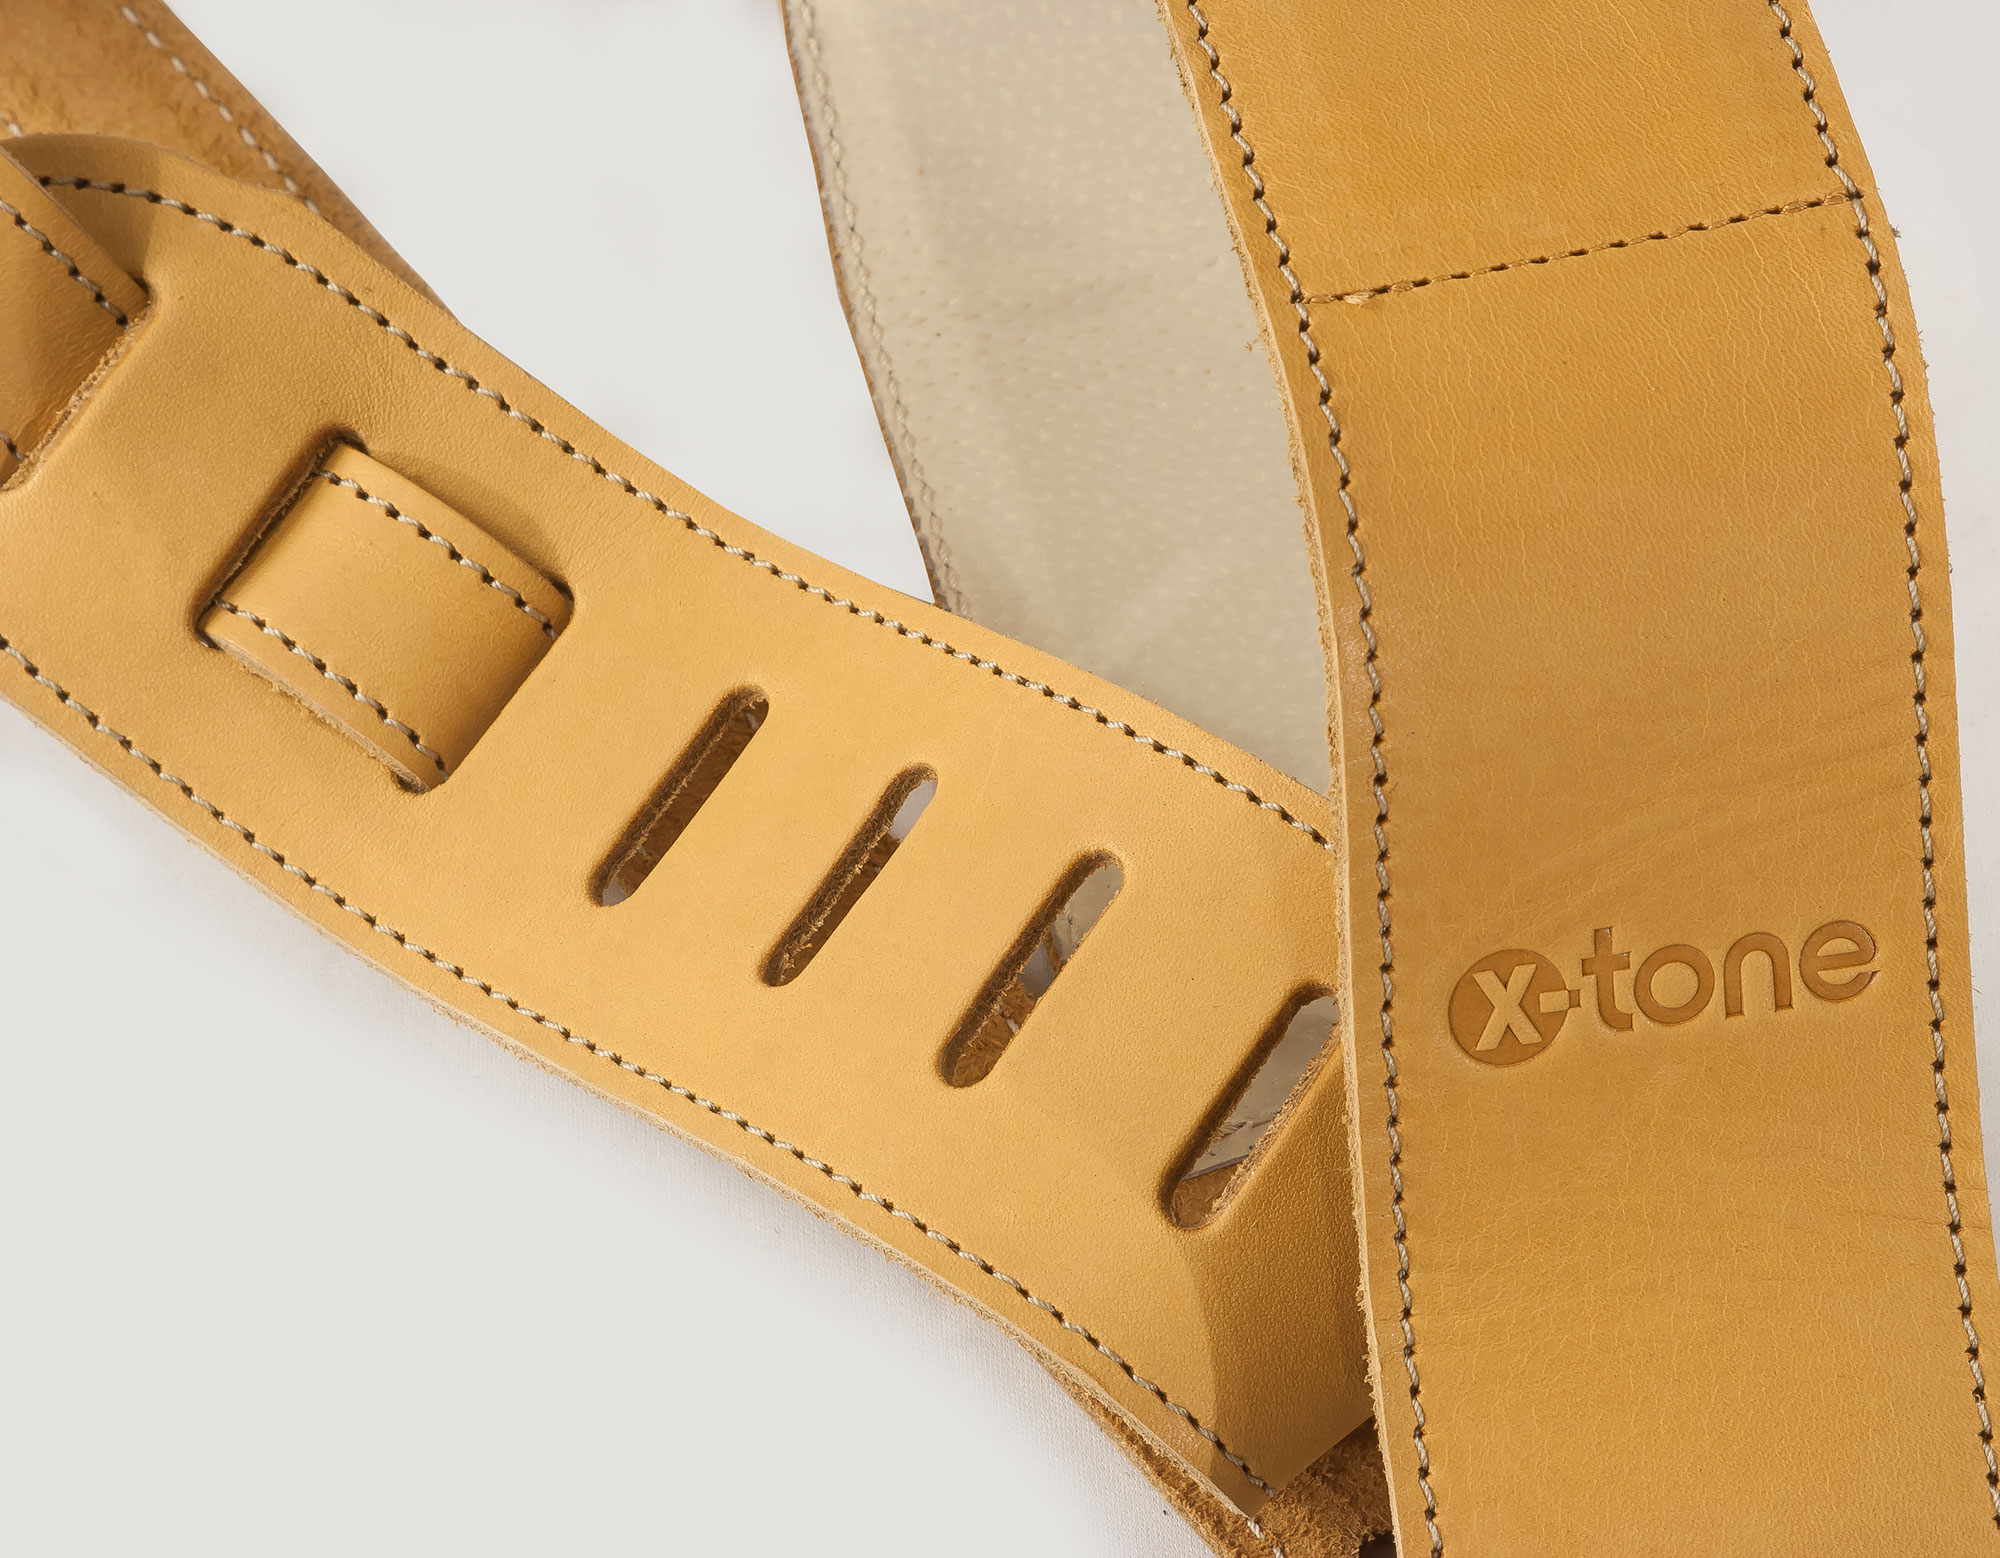 X-tone Xg 3154 Classic Plus Leather Guitar Strap Cuir RembourrÉe Brownstone Beige - Sangle Courroie - Variation 1